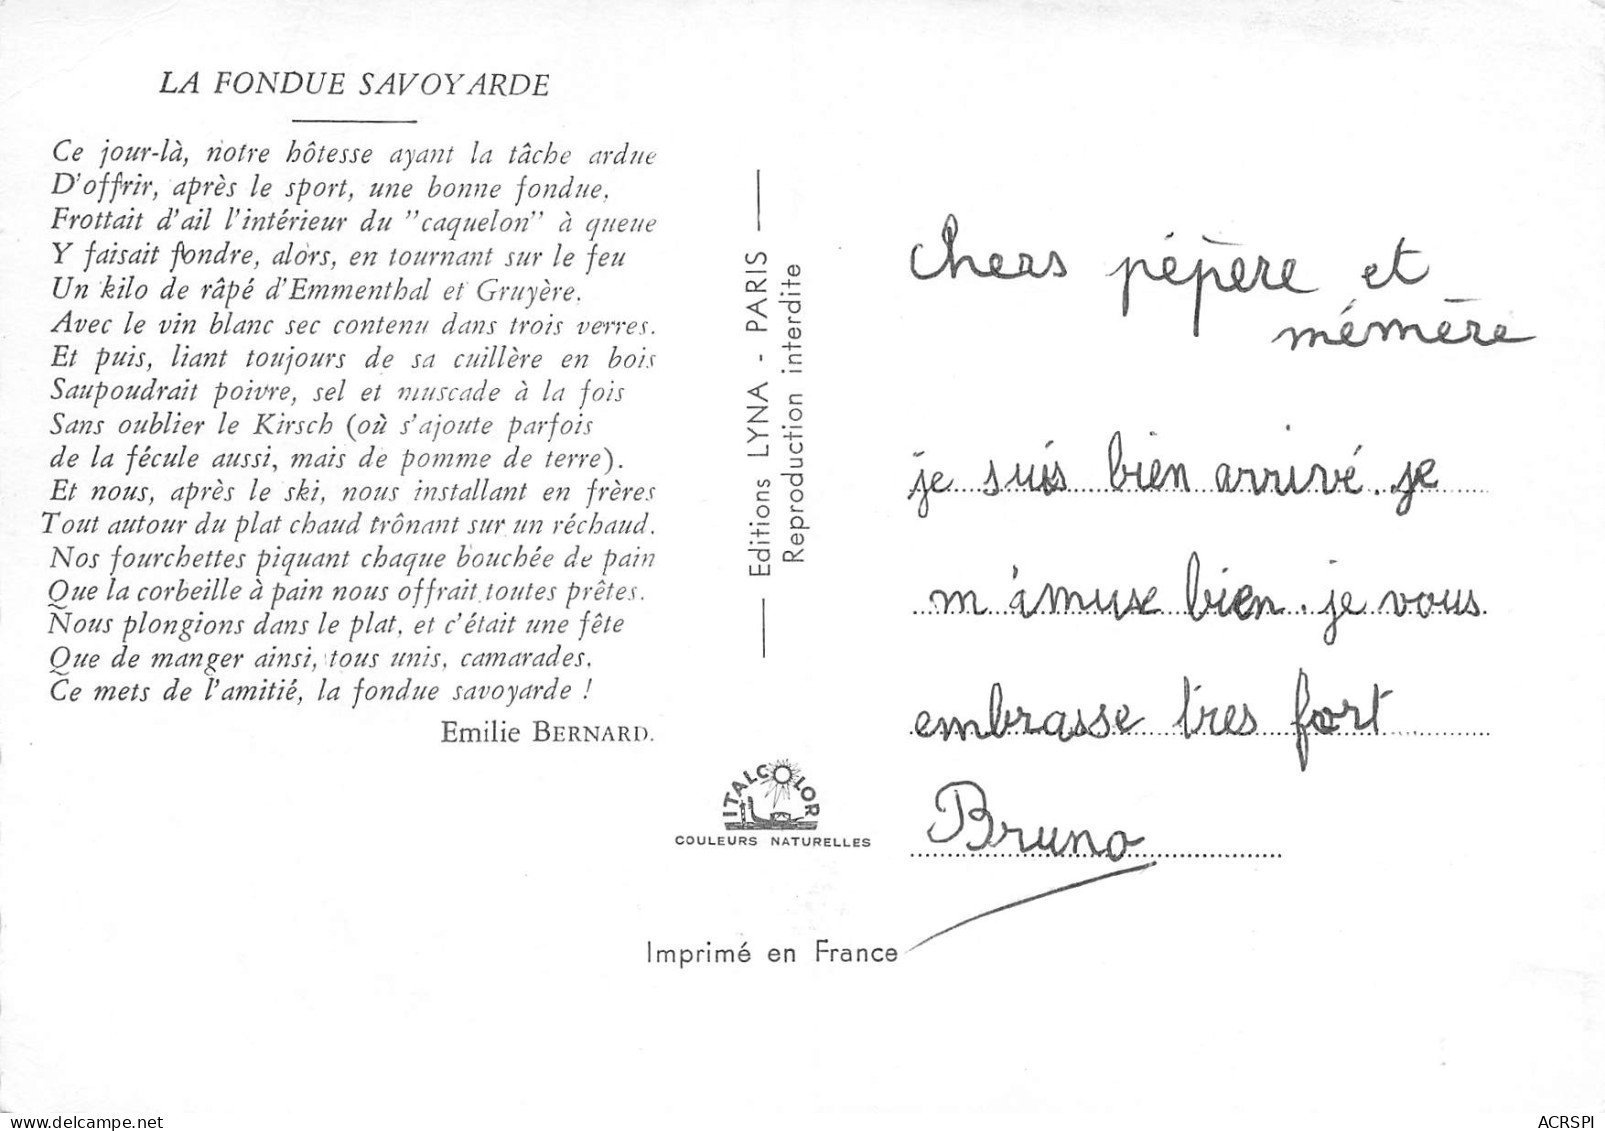 74 Recette De La FONDUE SAVOYARDE  Vin Apremont  48 (scan Recto Verso)MF2774VIC - Recettes (cuisine)